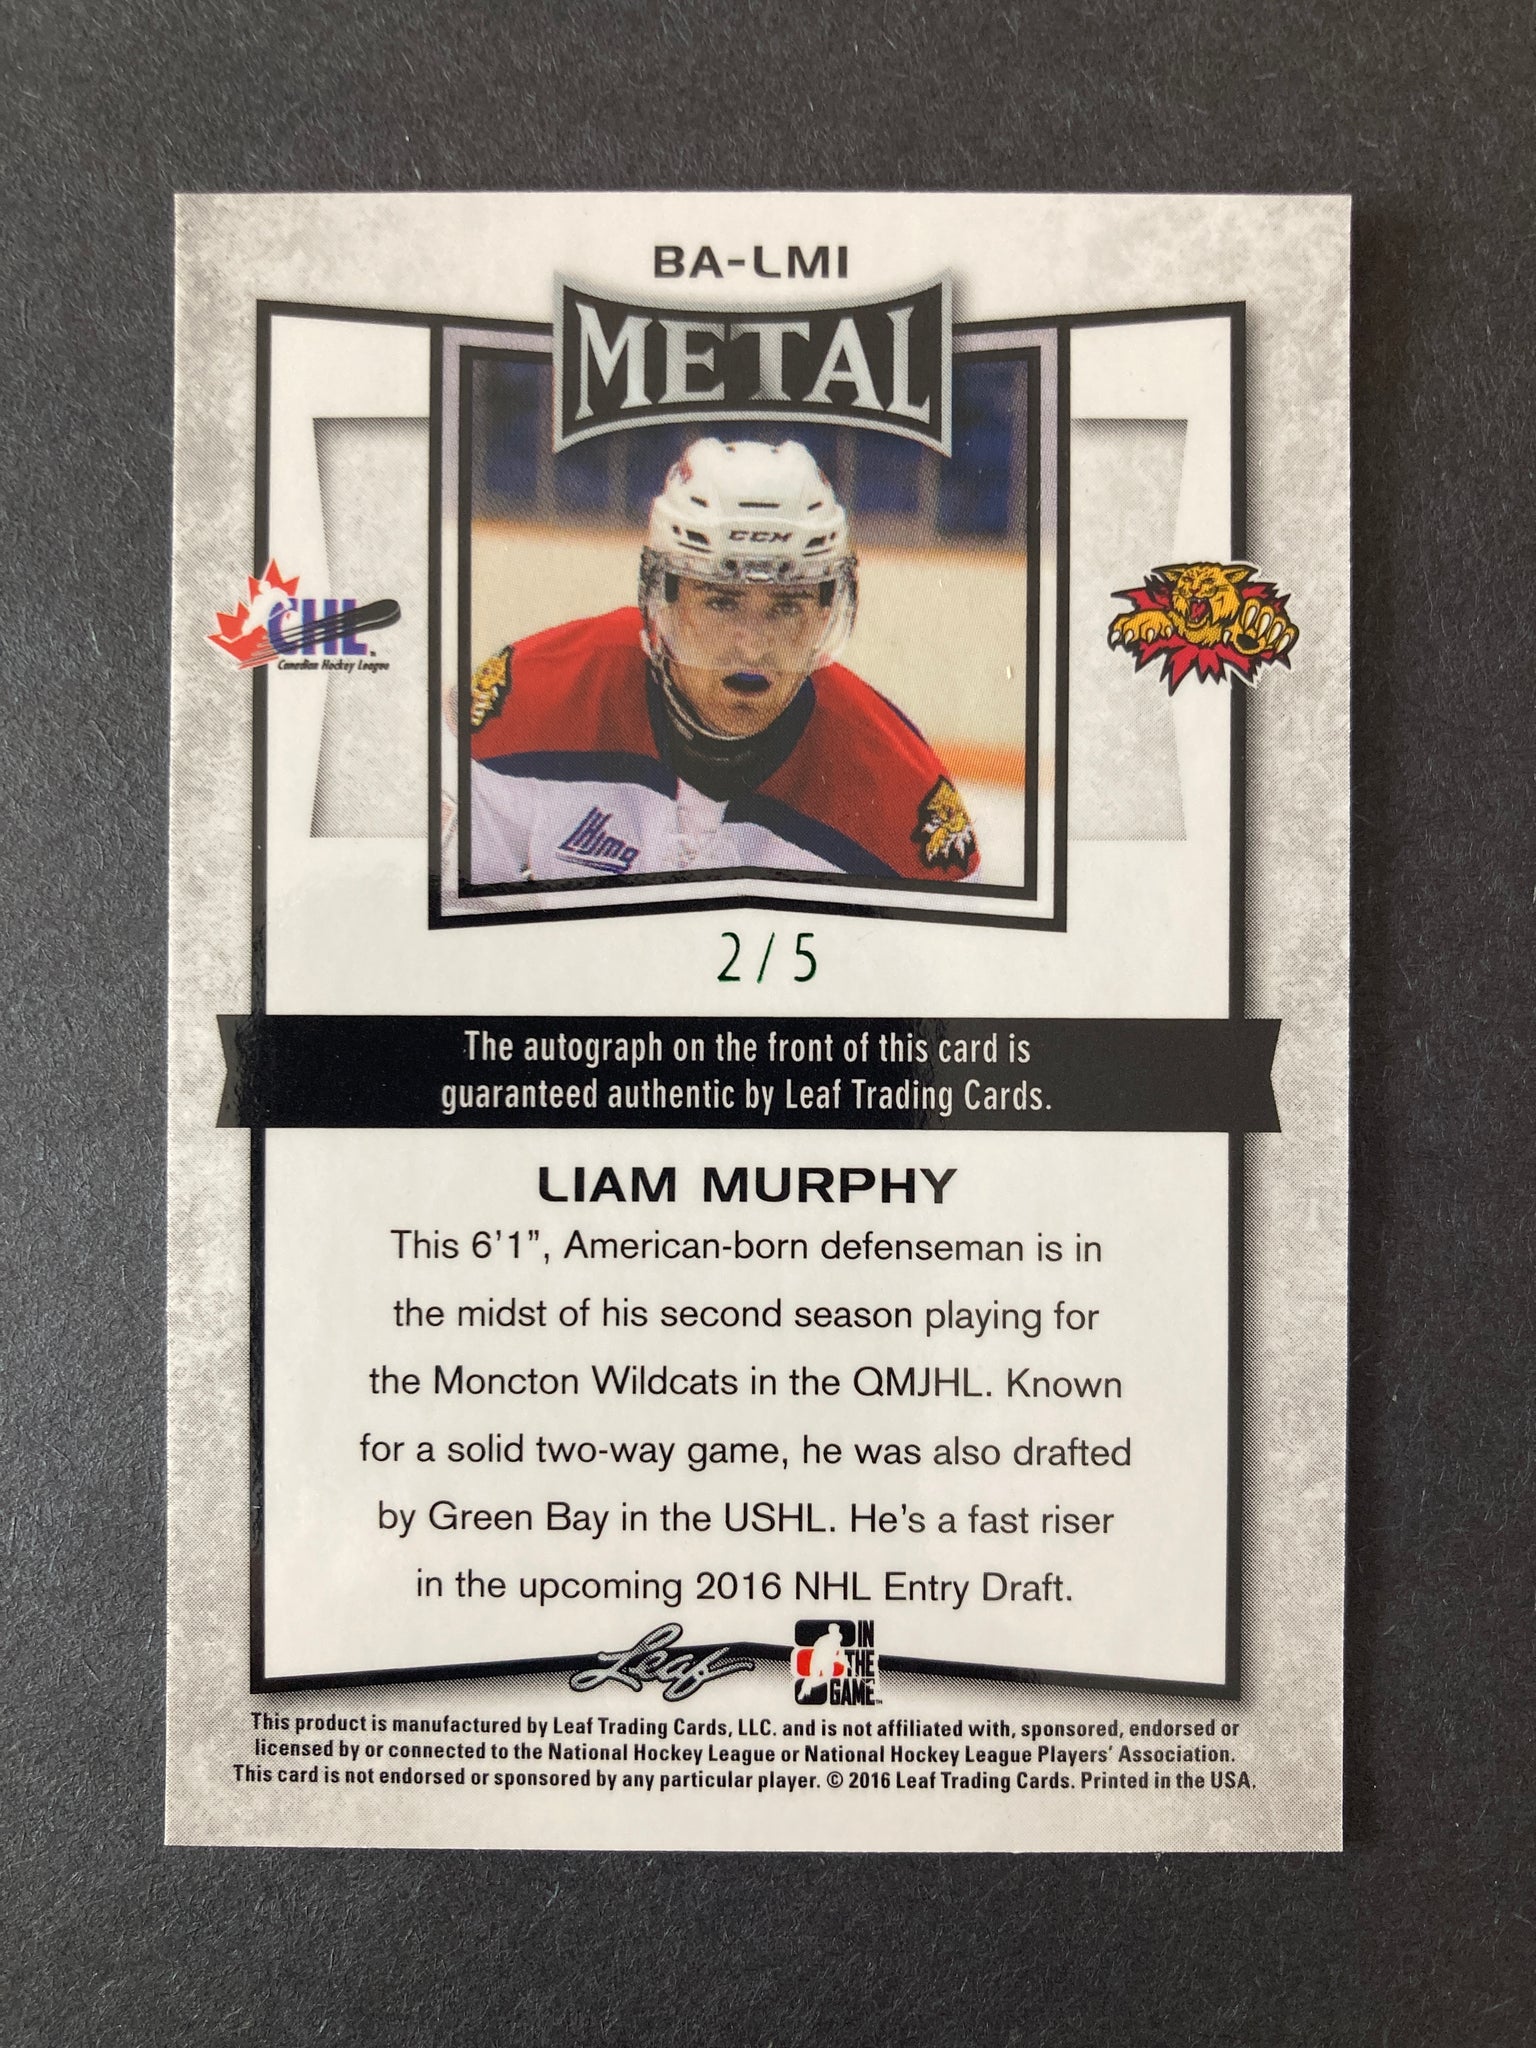 Liam Murphy Leaf Authentic Metal Signature #BA-LMI CHL #d 2/5 Moncton Wildcats